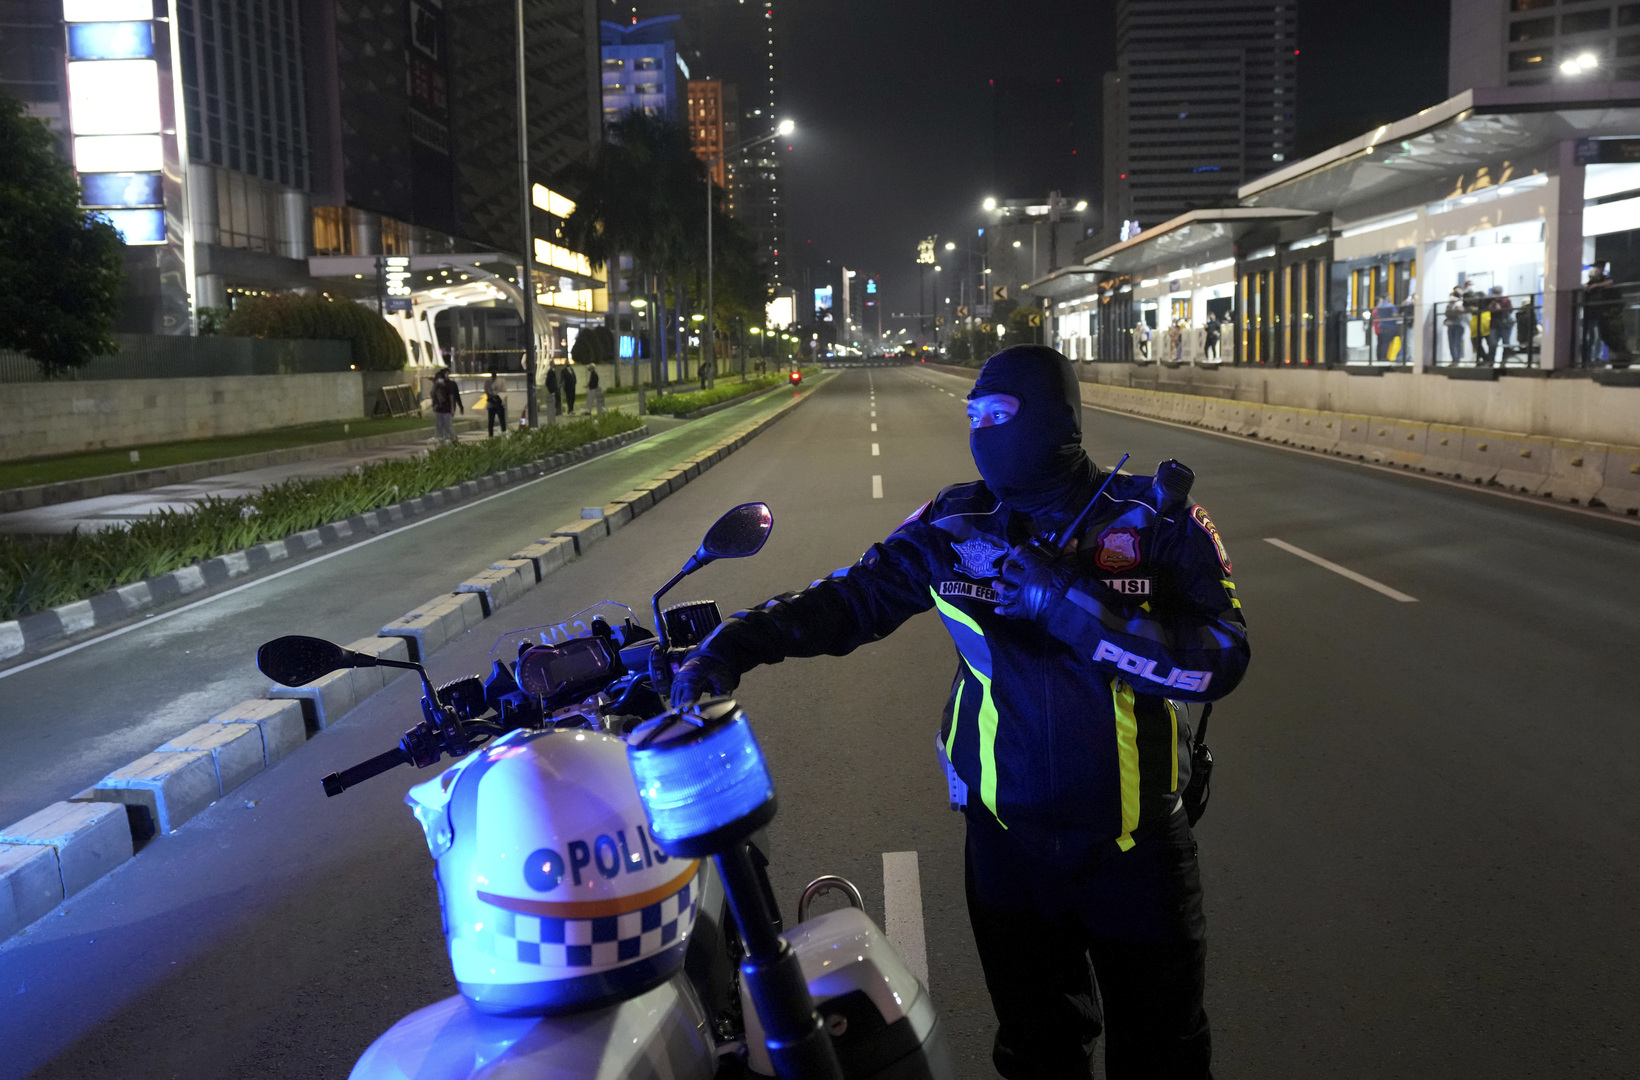 طريقة ترويج للكحول تثير غضب المسلمين في إندونيسيا والسلطات تتحرك